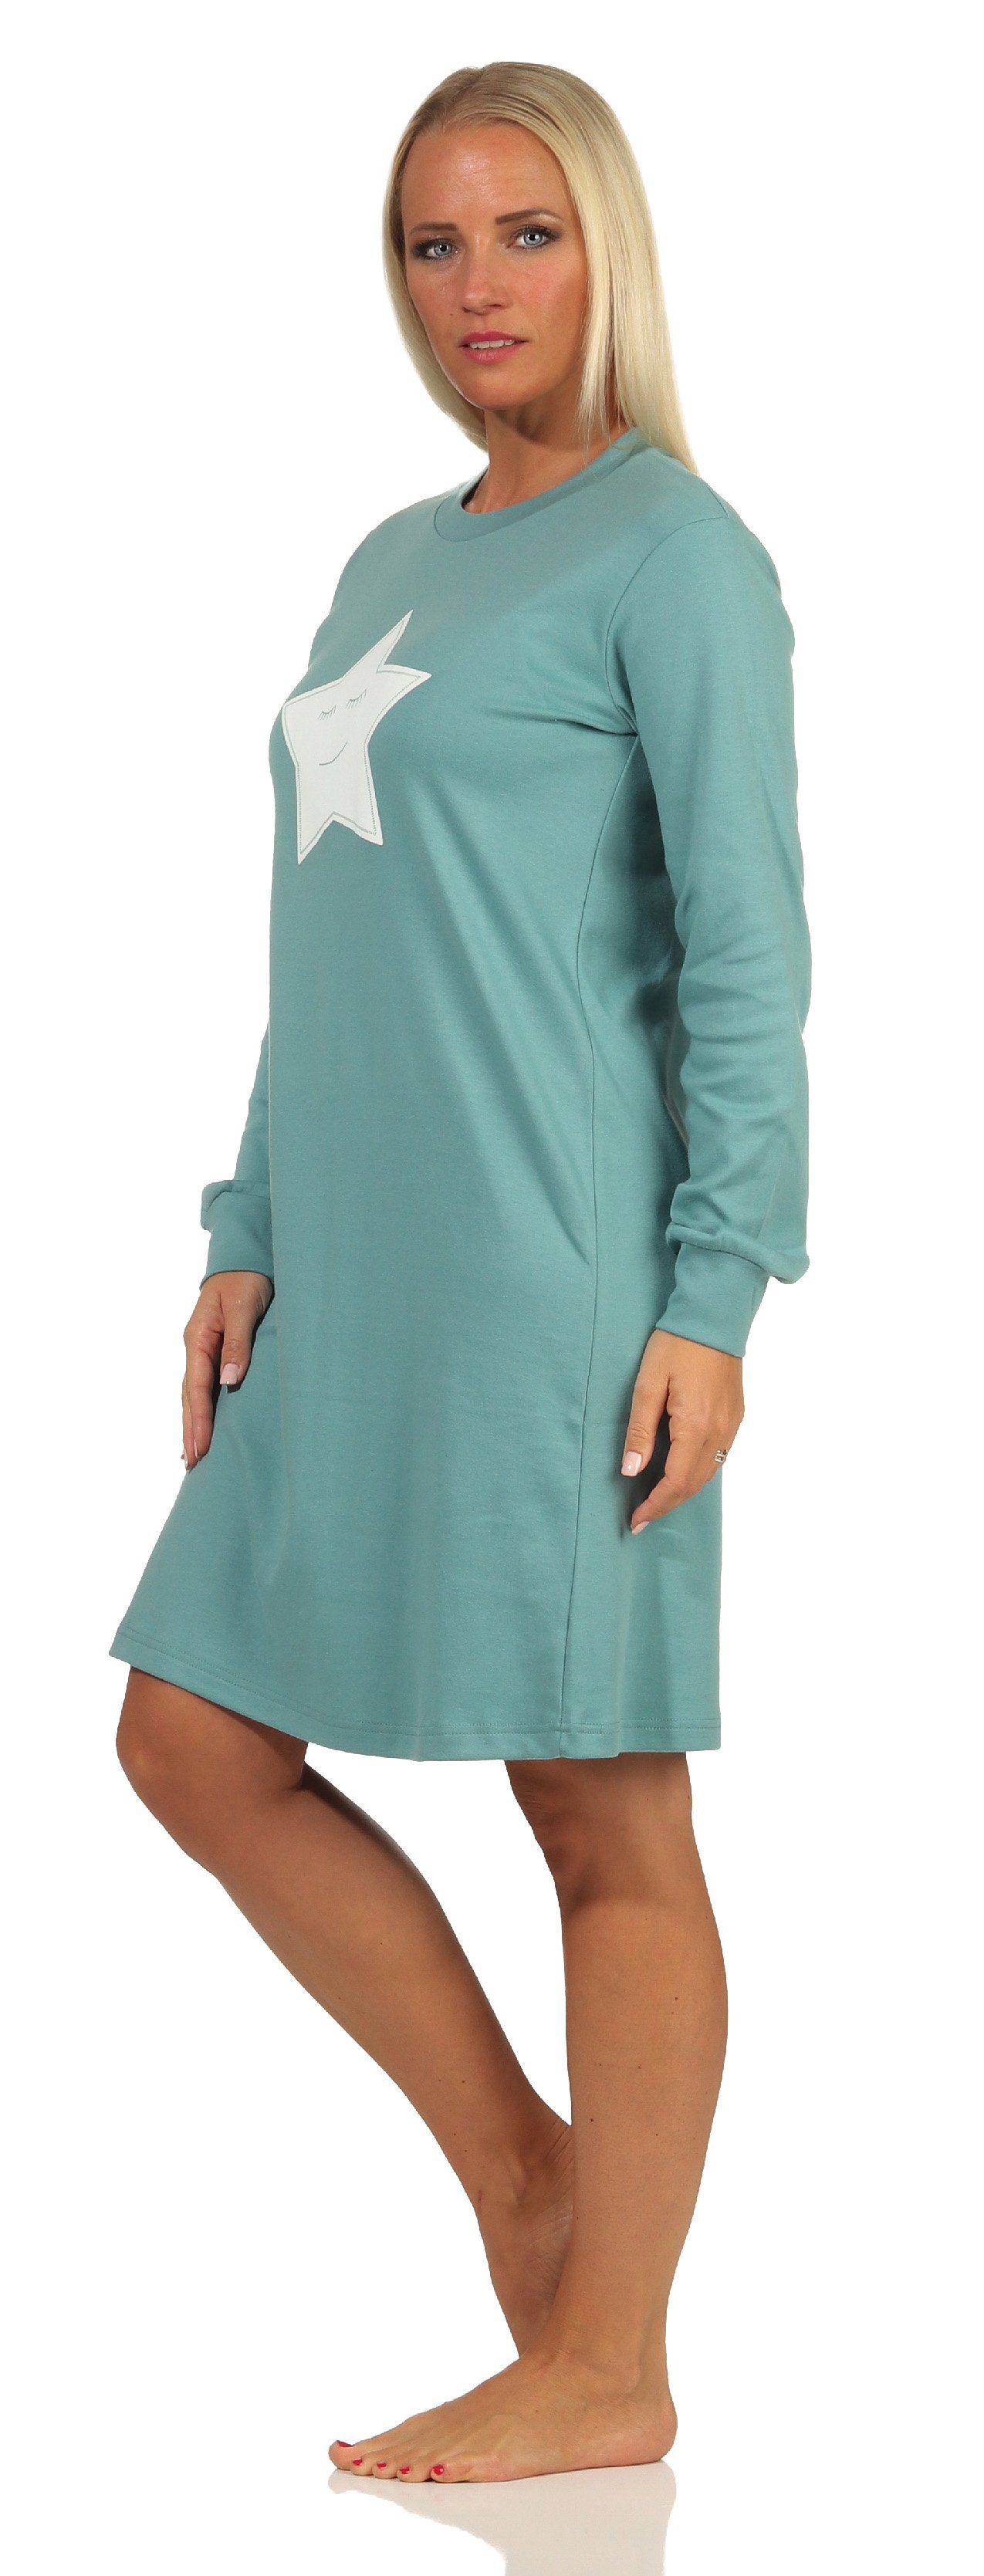 Damen langarm Motiv + Sterne Bündchen mit Nachthemd Normann Nachthemd Kuschel grün Interlock